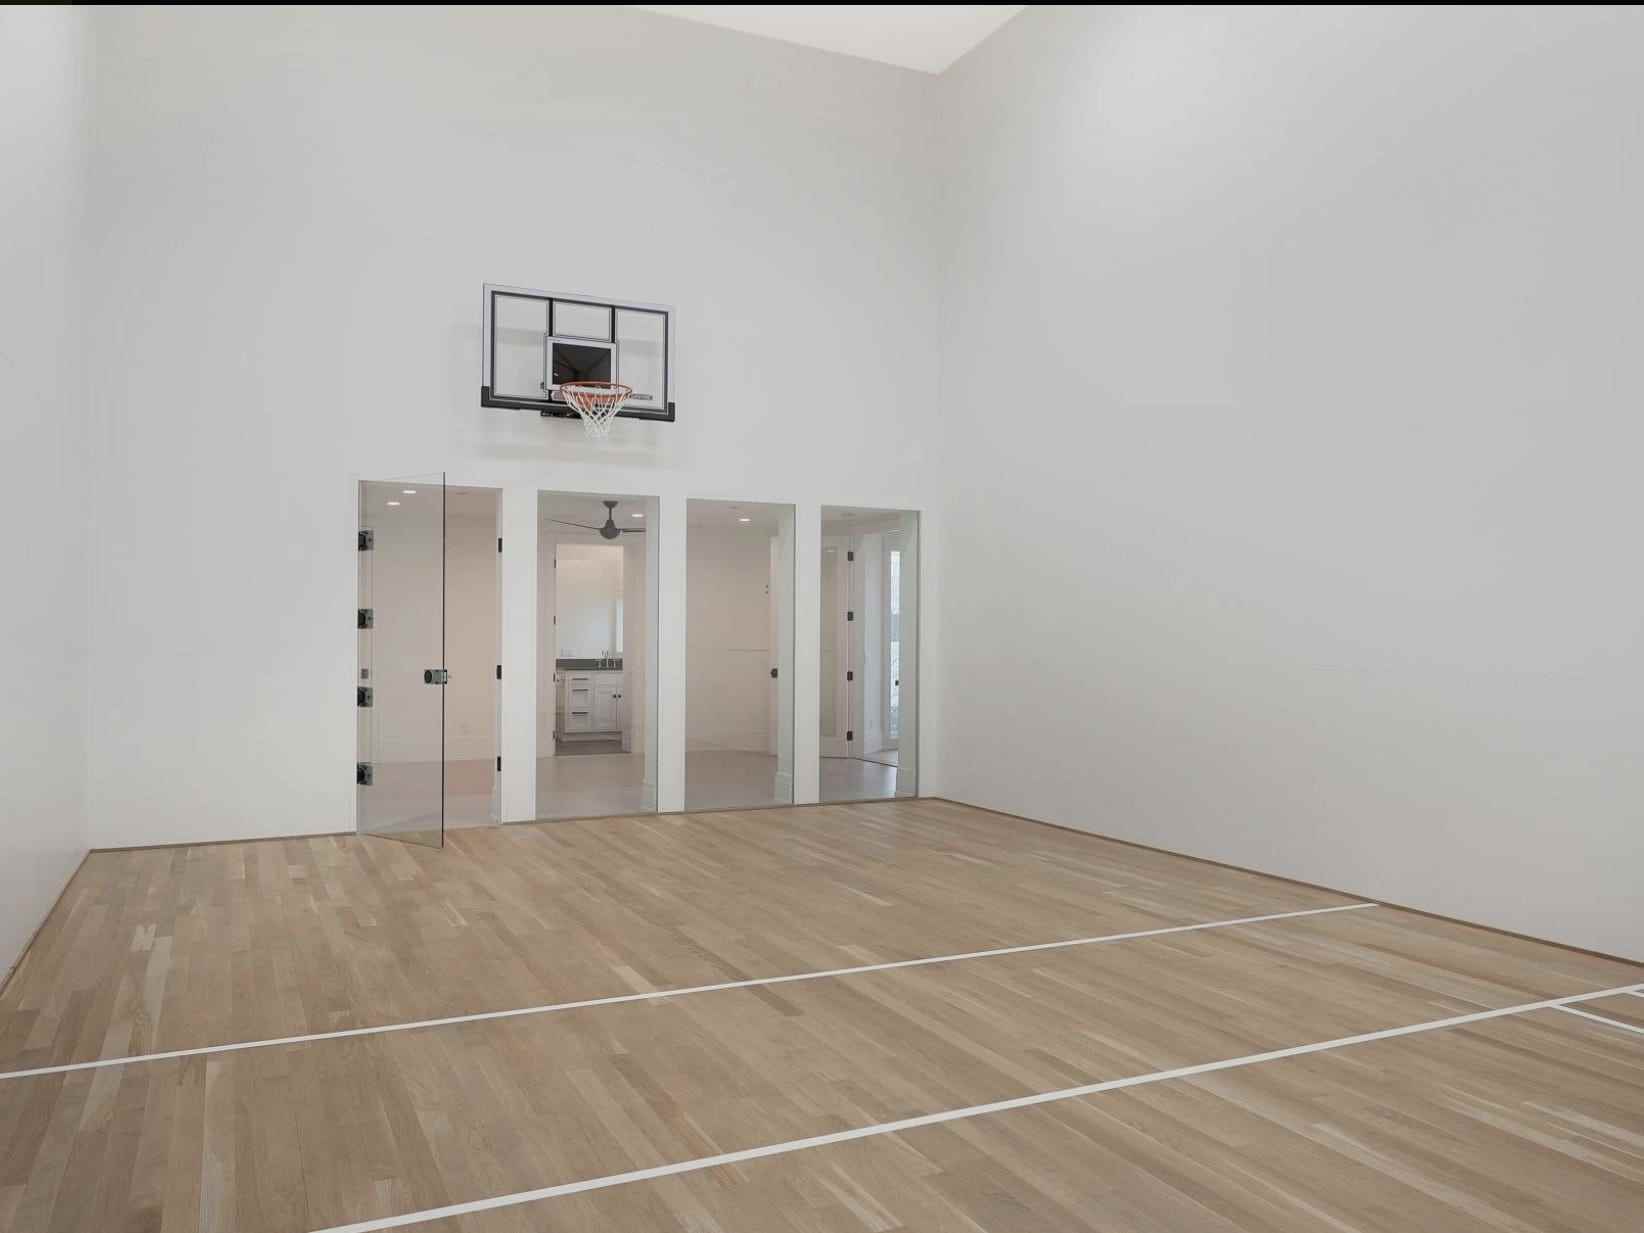 Ein Indoor-Basketballplatz